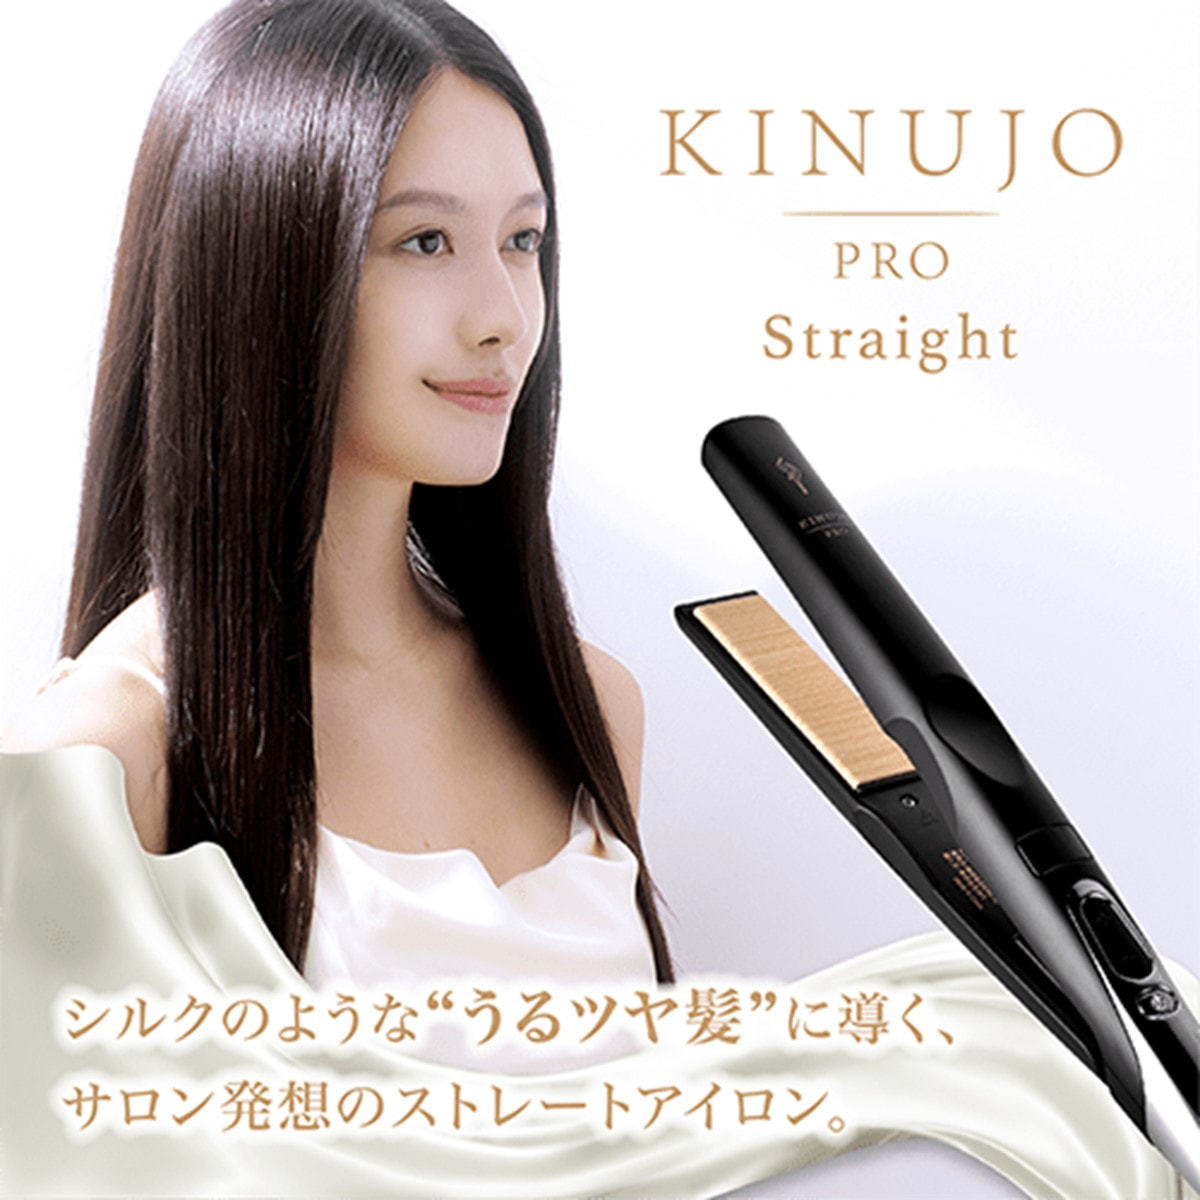 KINUJO Pro(絹女プロ)ストレートヘアアイロン KP001-